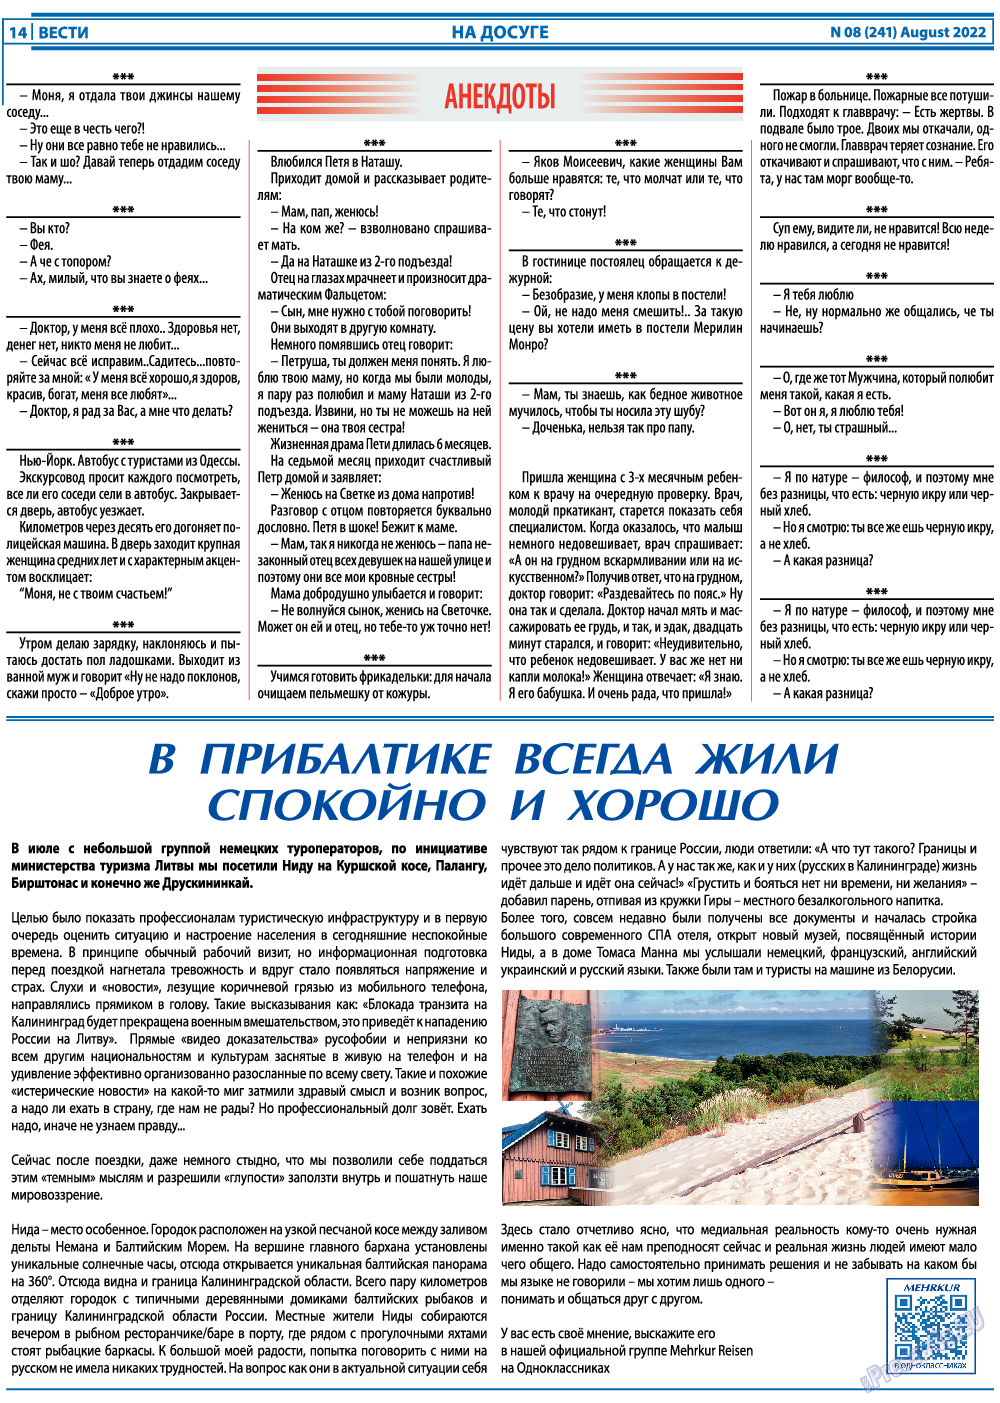 Вести, газета. 2022 №8 стр.14